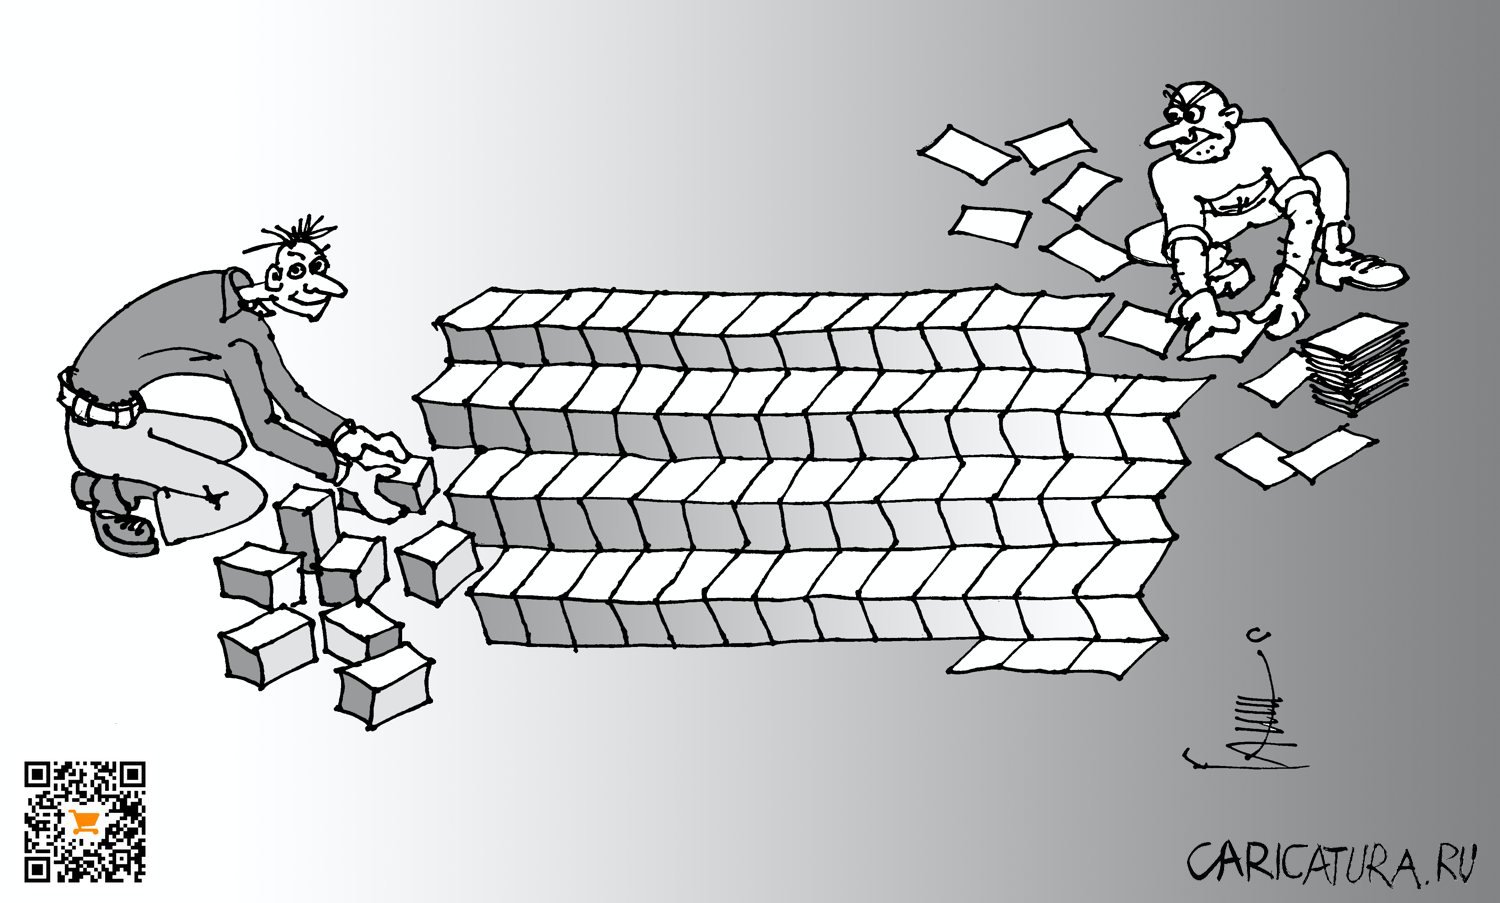 Карикатура "Оригами", Юрий Санников